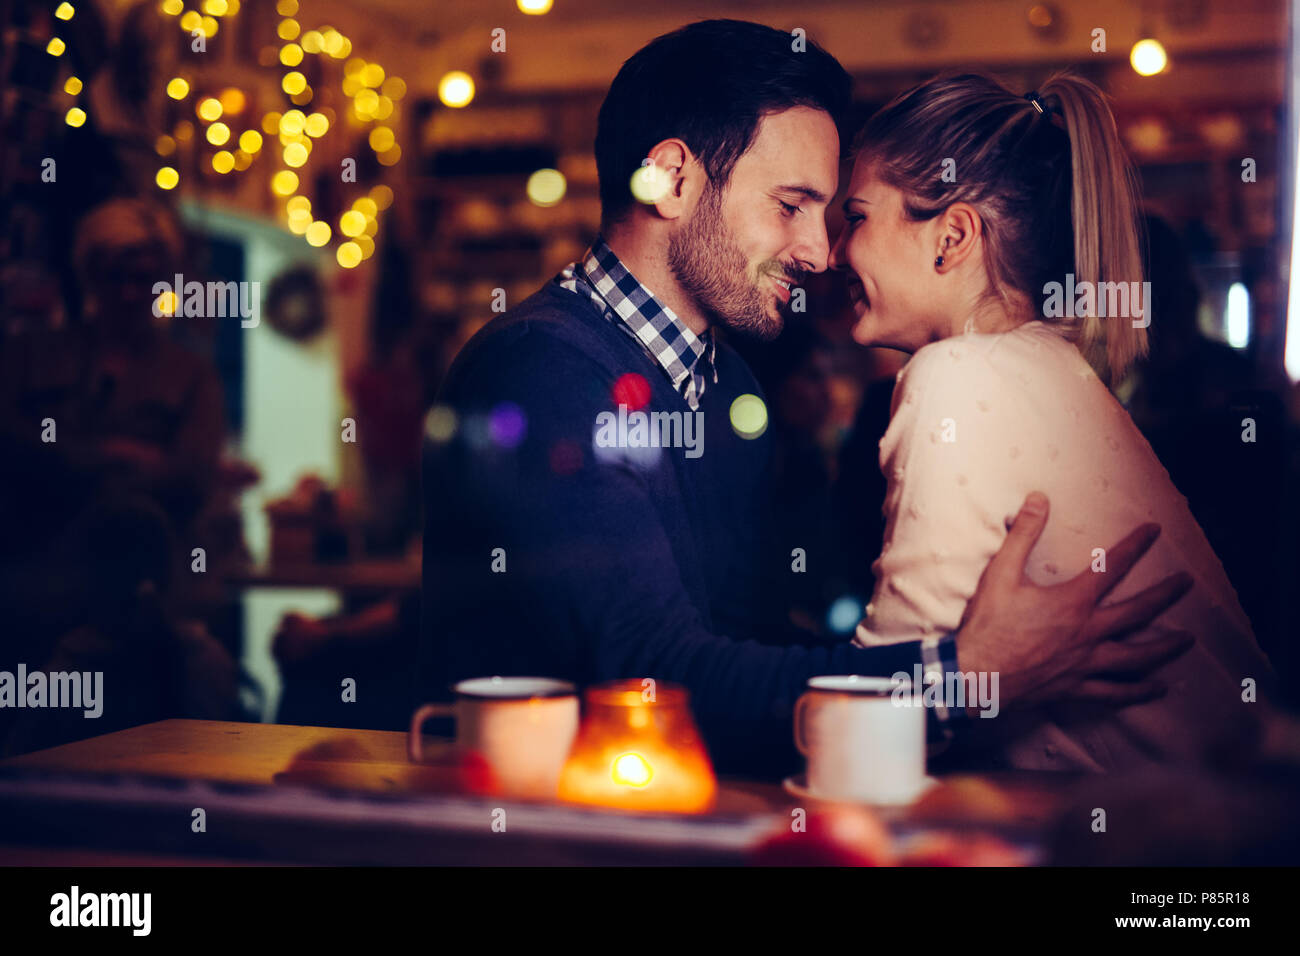 Pareja romántica dating en pub en la noche Foto de stock